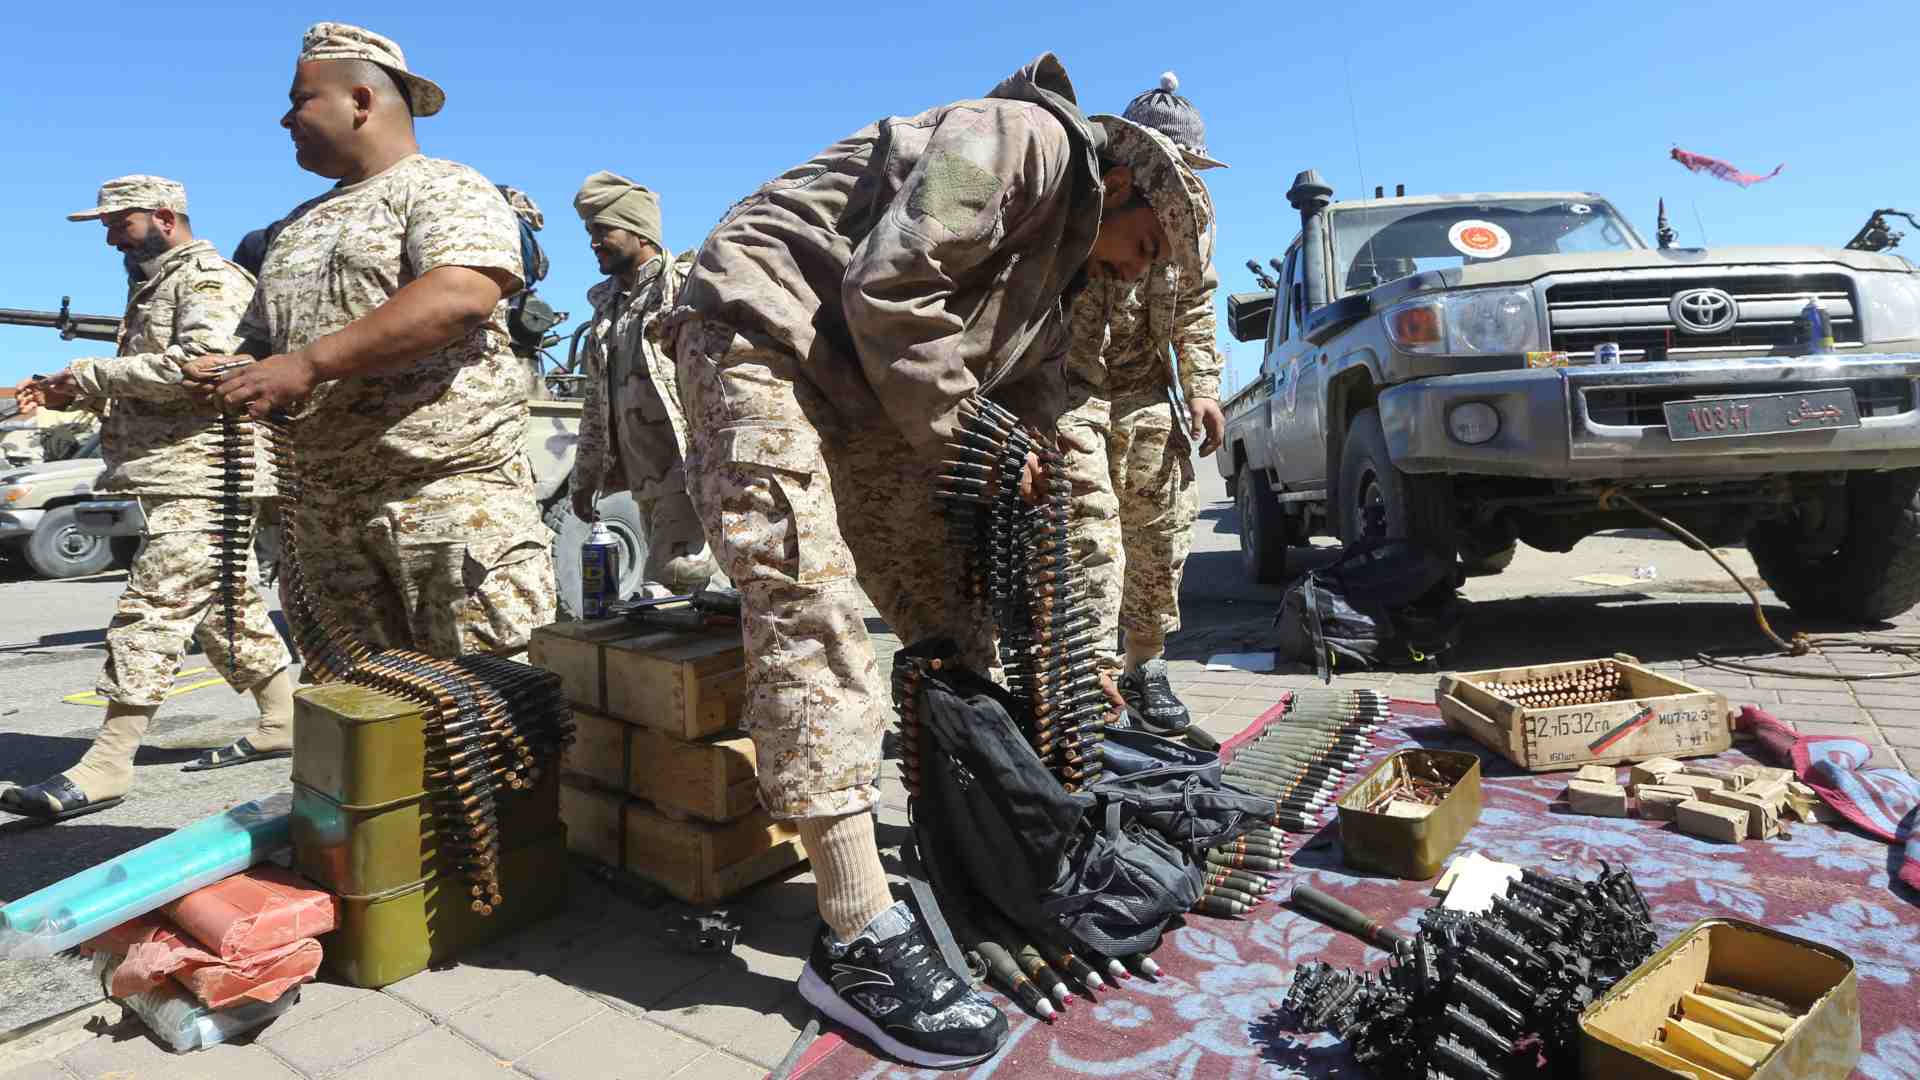 La UE y EEUU piden el "cese inmediato" de la ofensiva de Haftar en Libia tras decenas de muertos